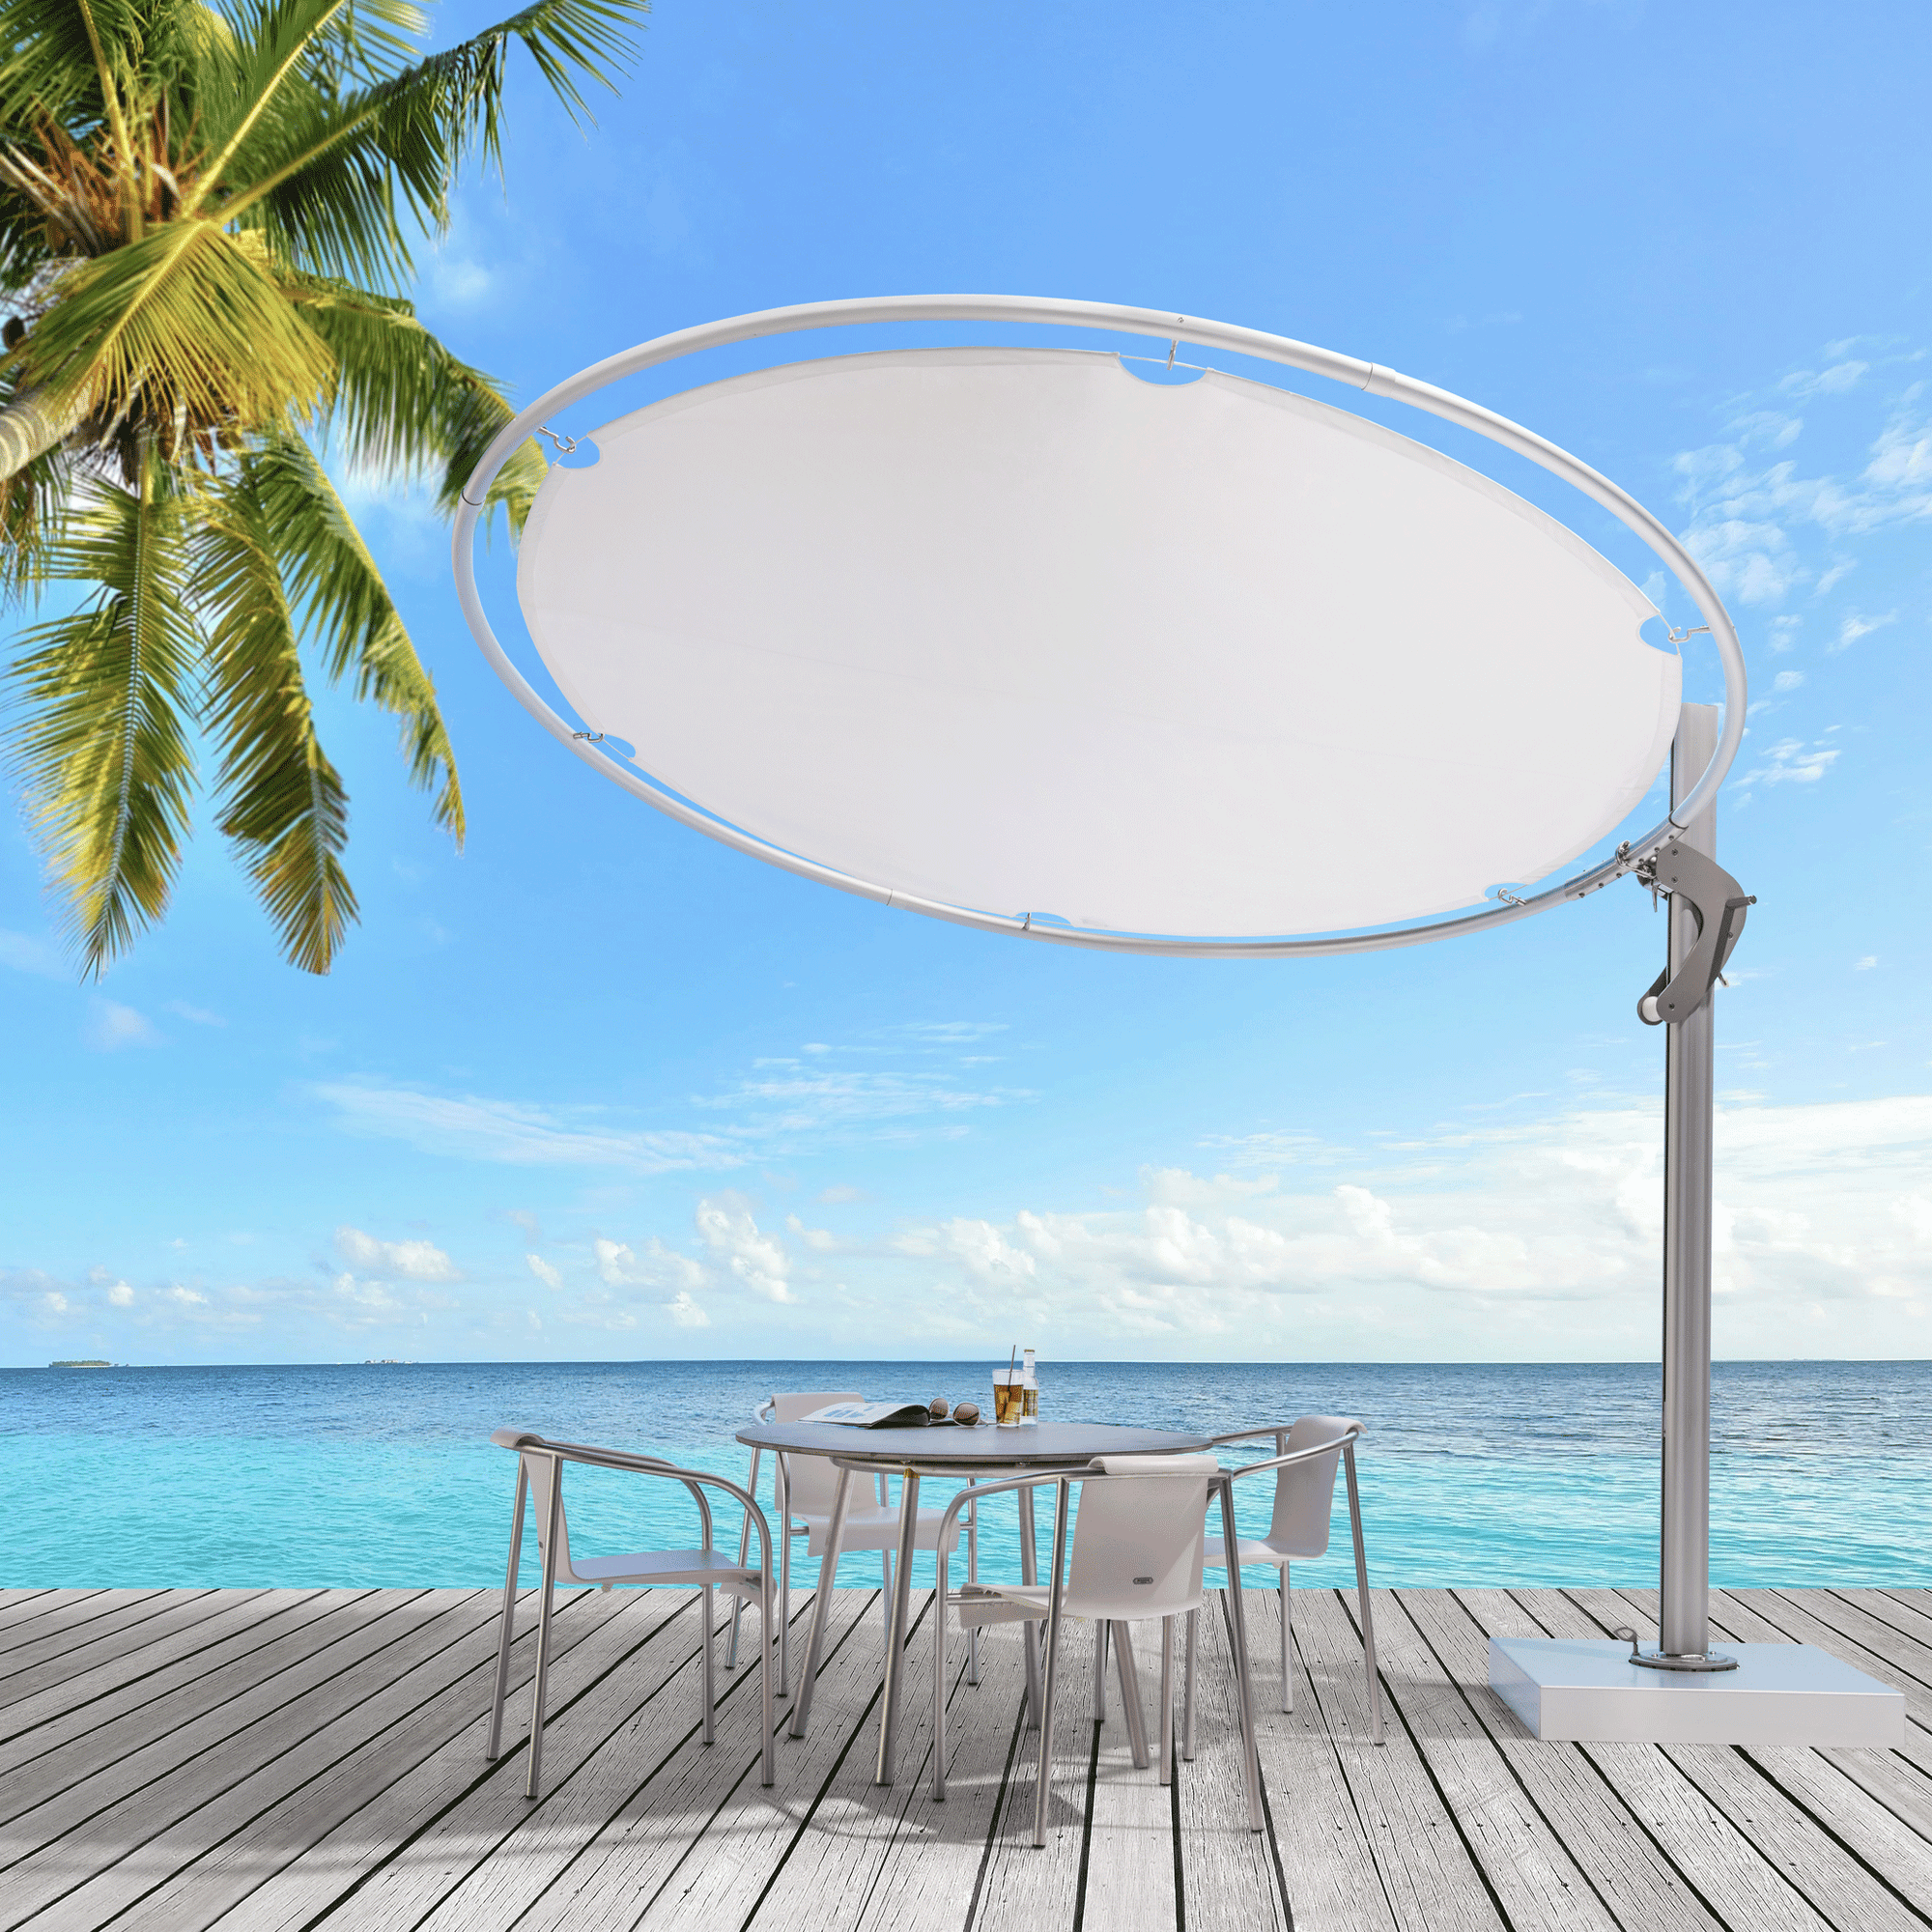 Umbrosa Sonnenschirm Eclipsum in weiss am Strand in der Karibik auf einer Teakholz Terrasse mit einem Bistrotisch und 4 weißen Stühlen.